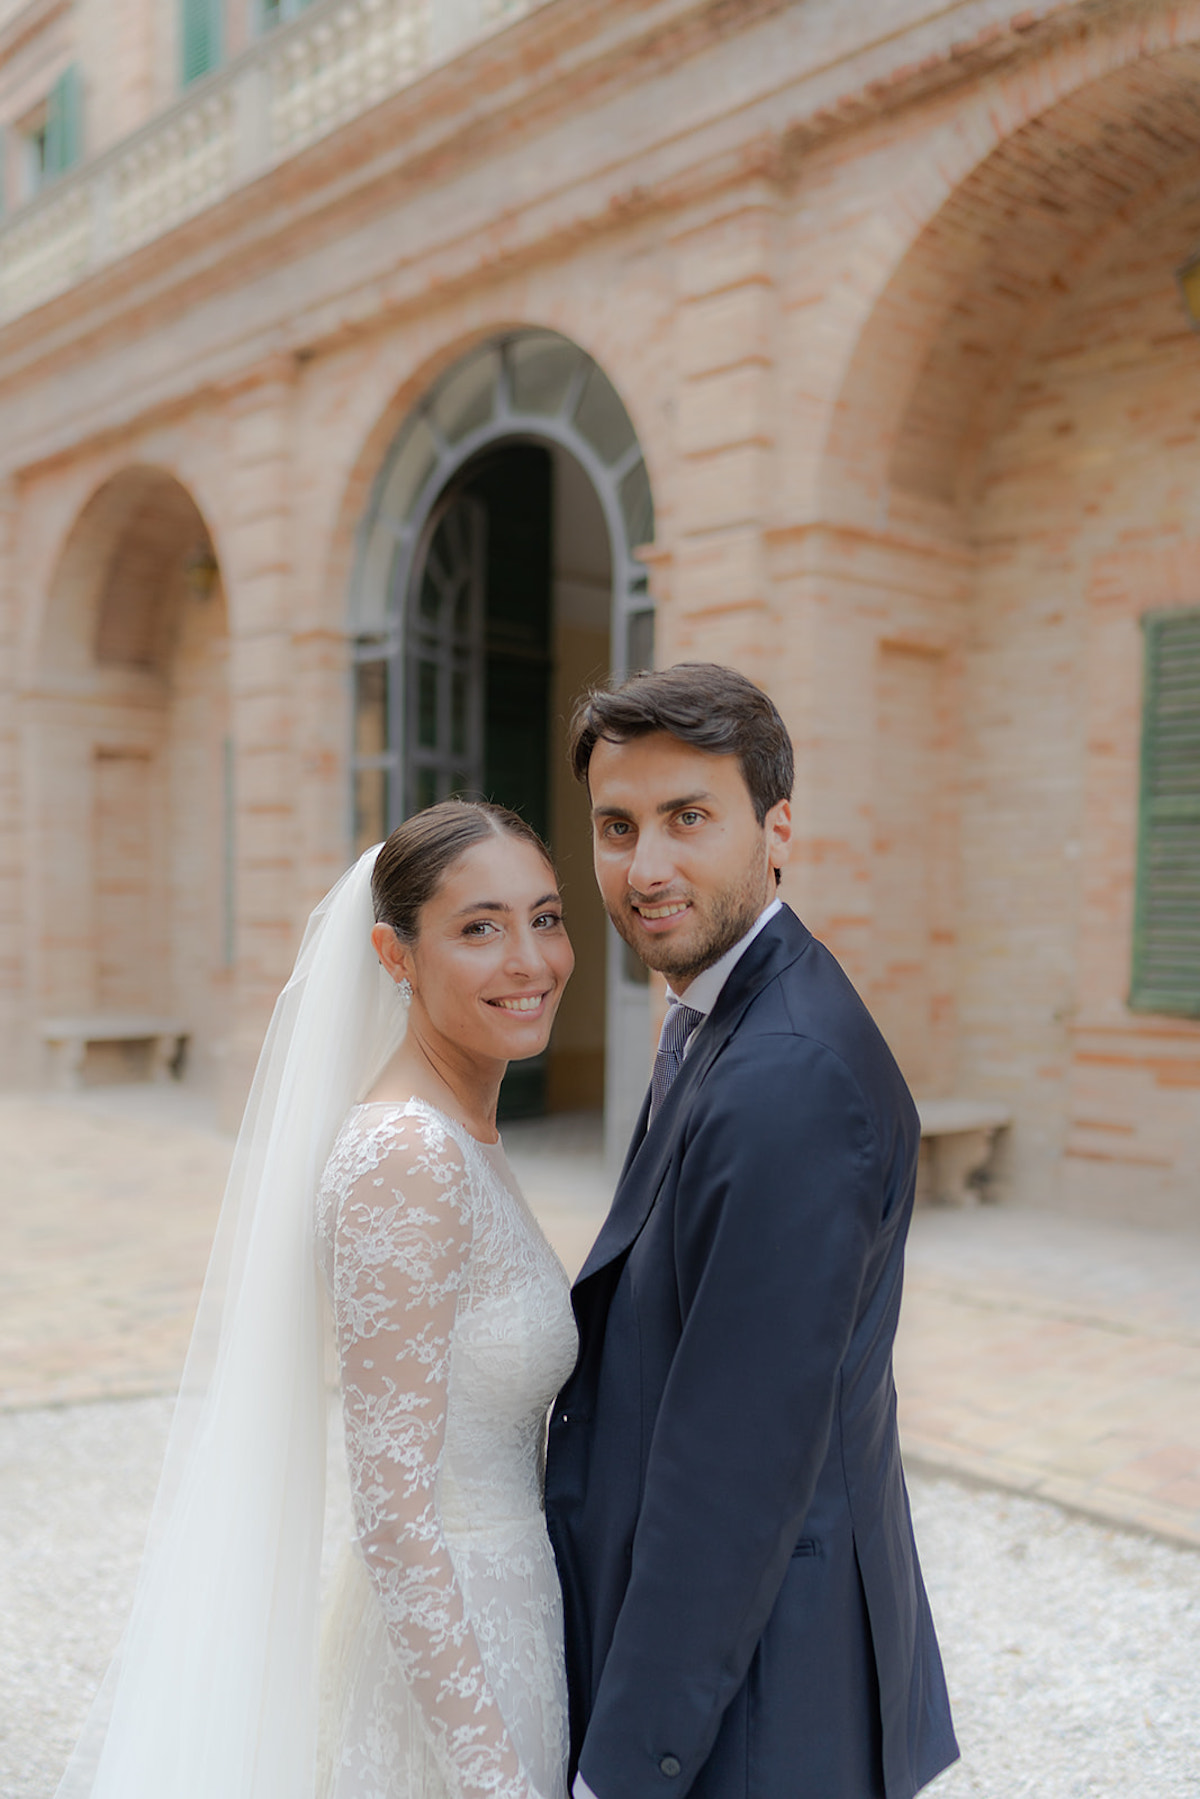 Mariage romantique en Italie - Cecilia + Renato - Blog Mariage Madame C